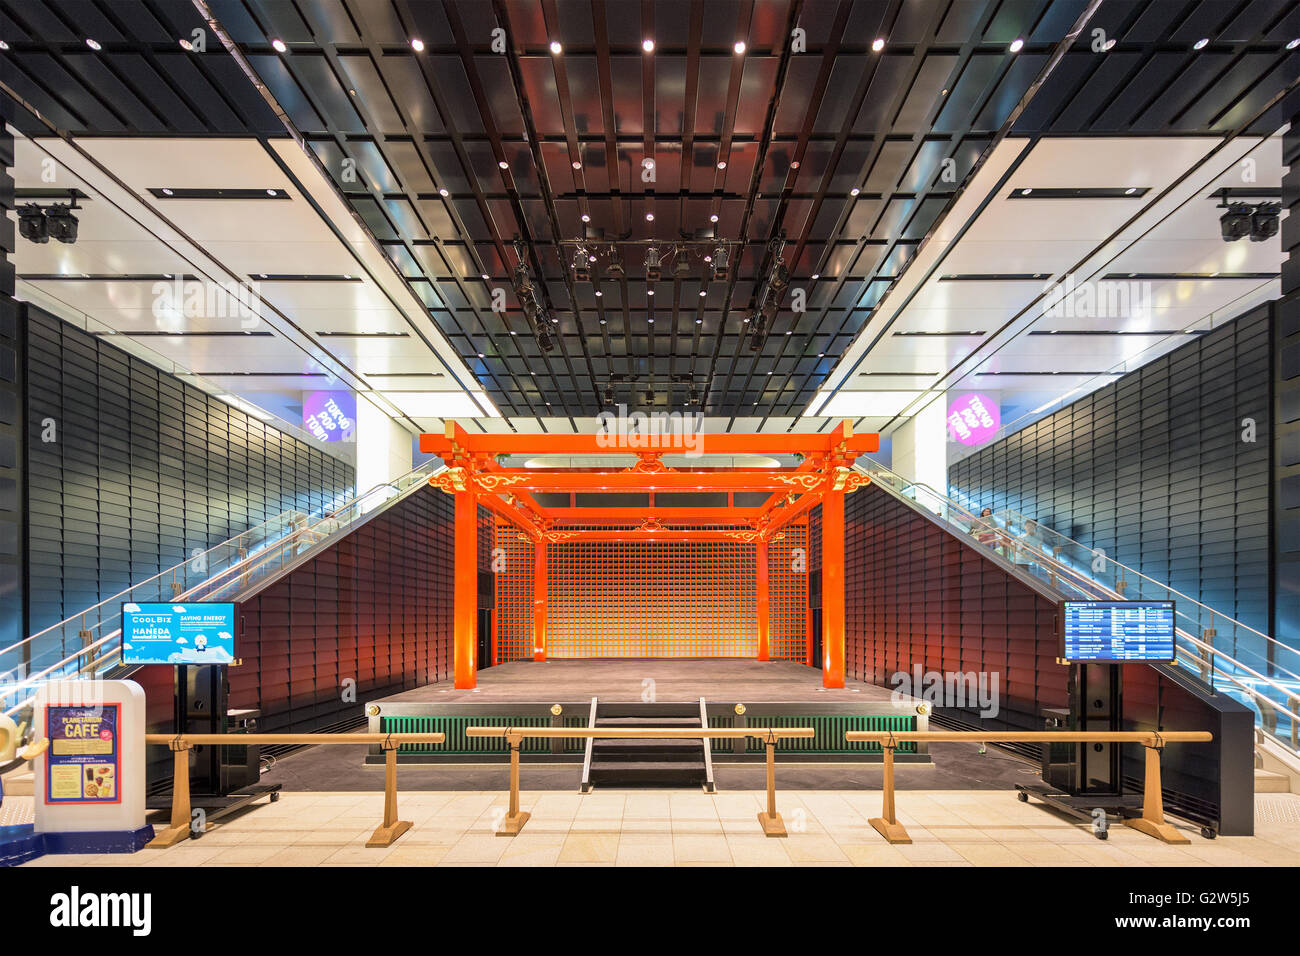 Tokio - 1. September 2015: Die traditionelle Bühne in Flughafen Tokio-Haneda. Die Bühne ist Teil des Edo-Marktes im Terminal. Stockfoto